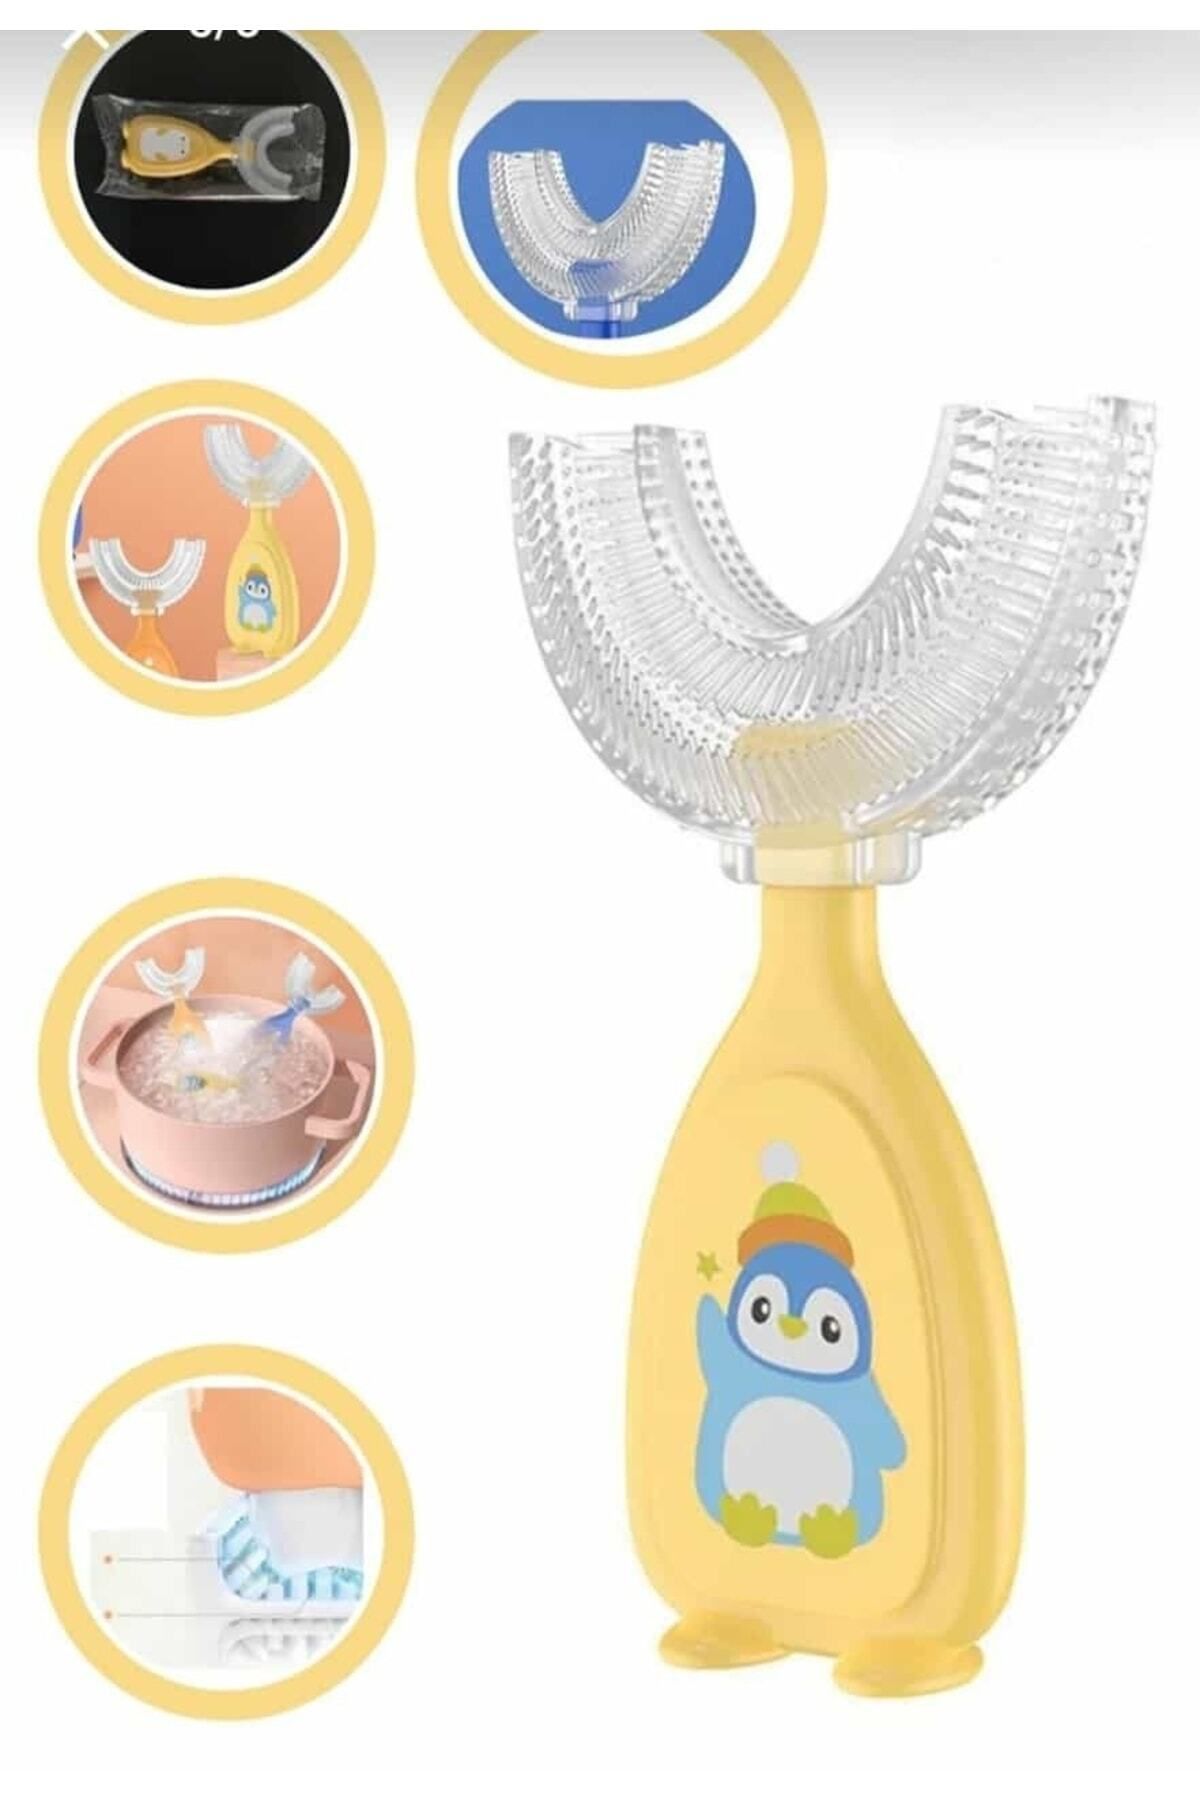 NEWBRENDHOME Çocuk Diş Fırçası U Şeklinde Pratik Bebek Diş Fırçası Saplı 3-12 Yaş Mavi Renk Kutulu 360 Derece